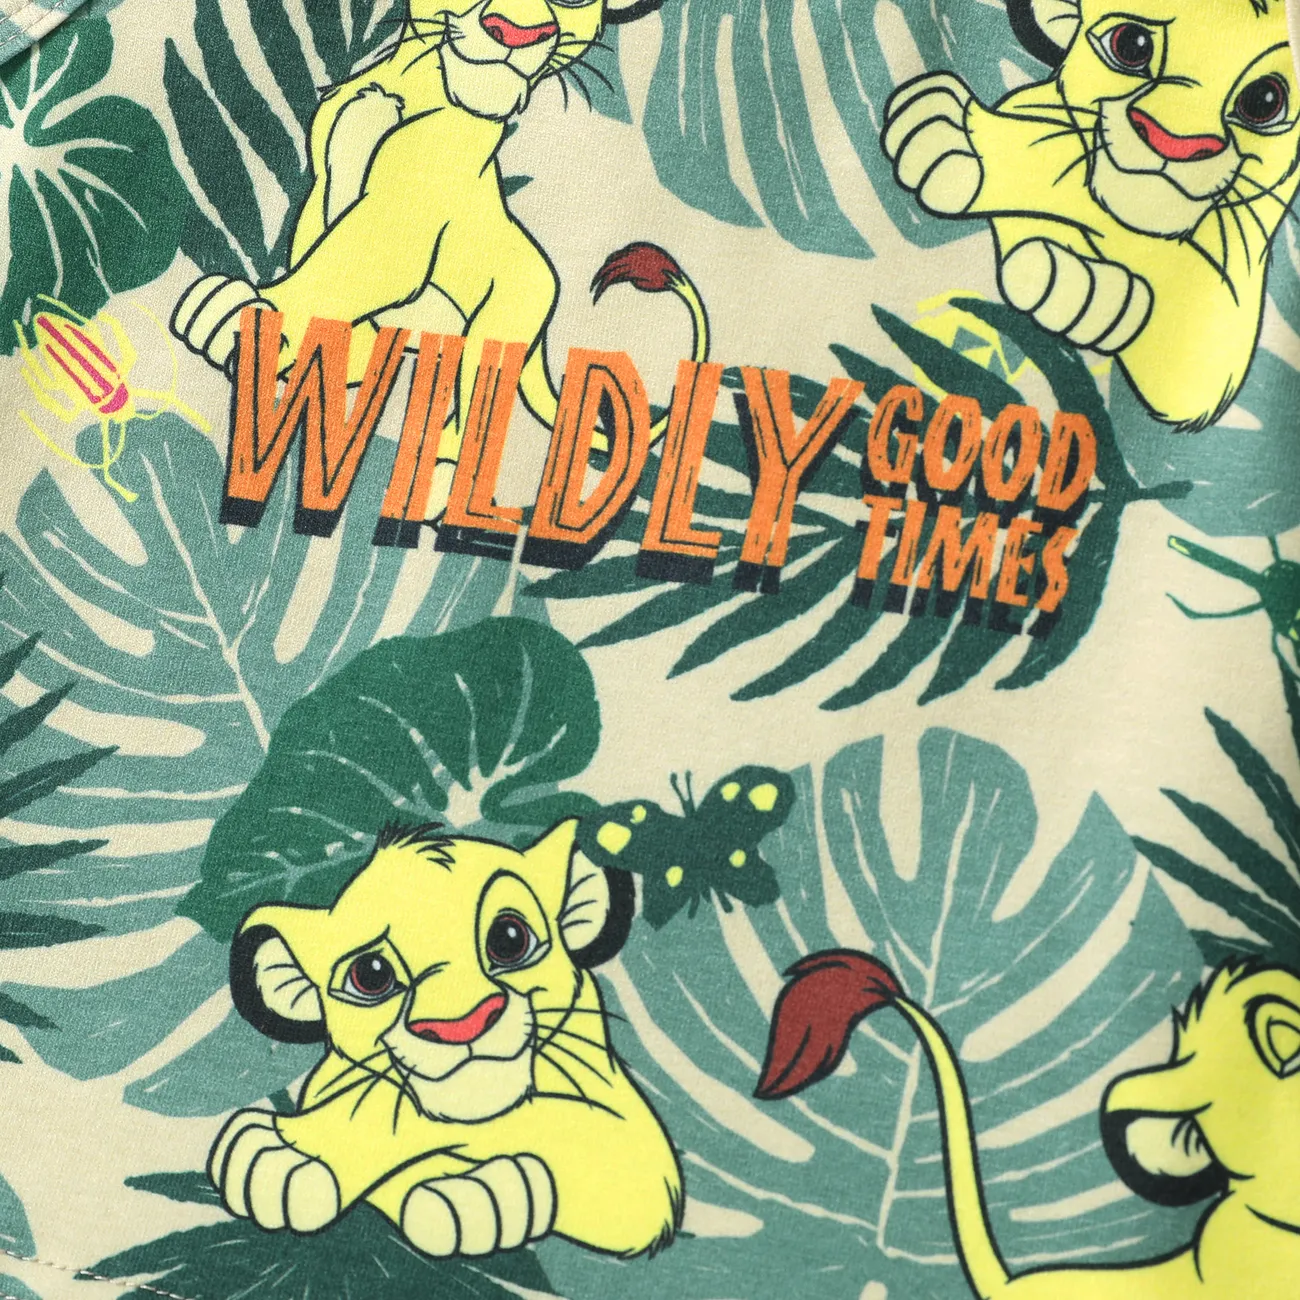 Disney Lion King Baby/Toddler Boys Simba 2pcs Naia™ Character Print Tank Top with Shorts Sporty Set Green big image 1